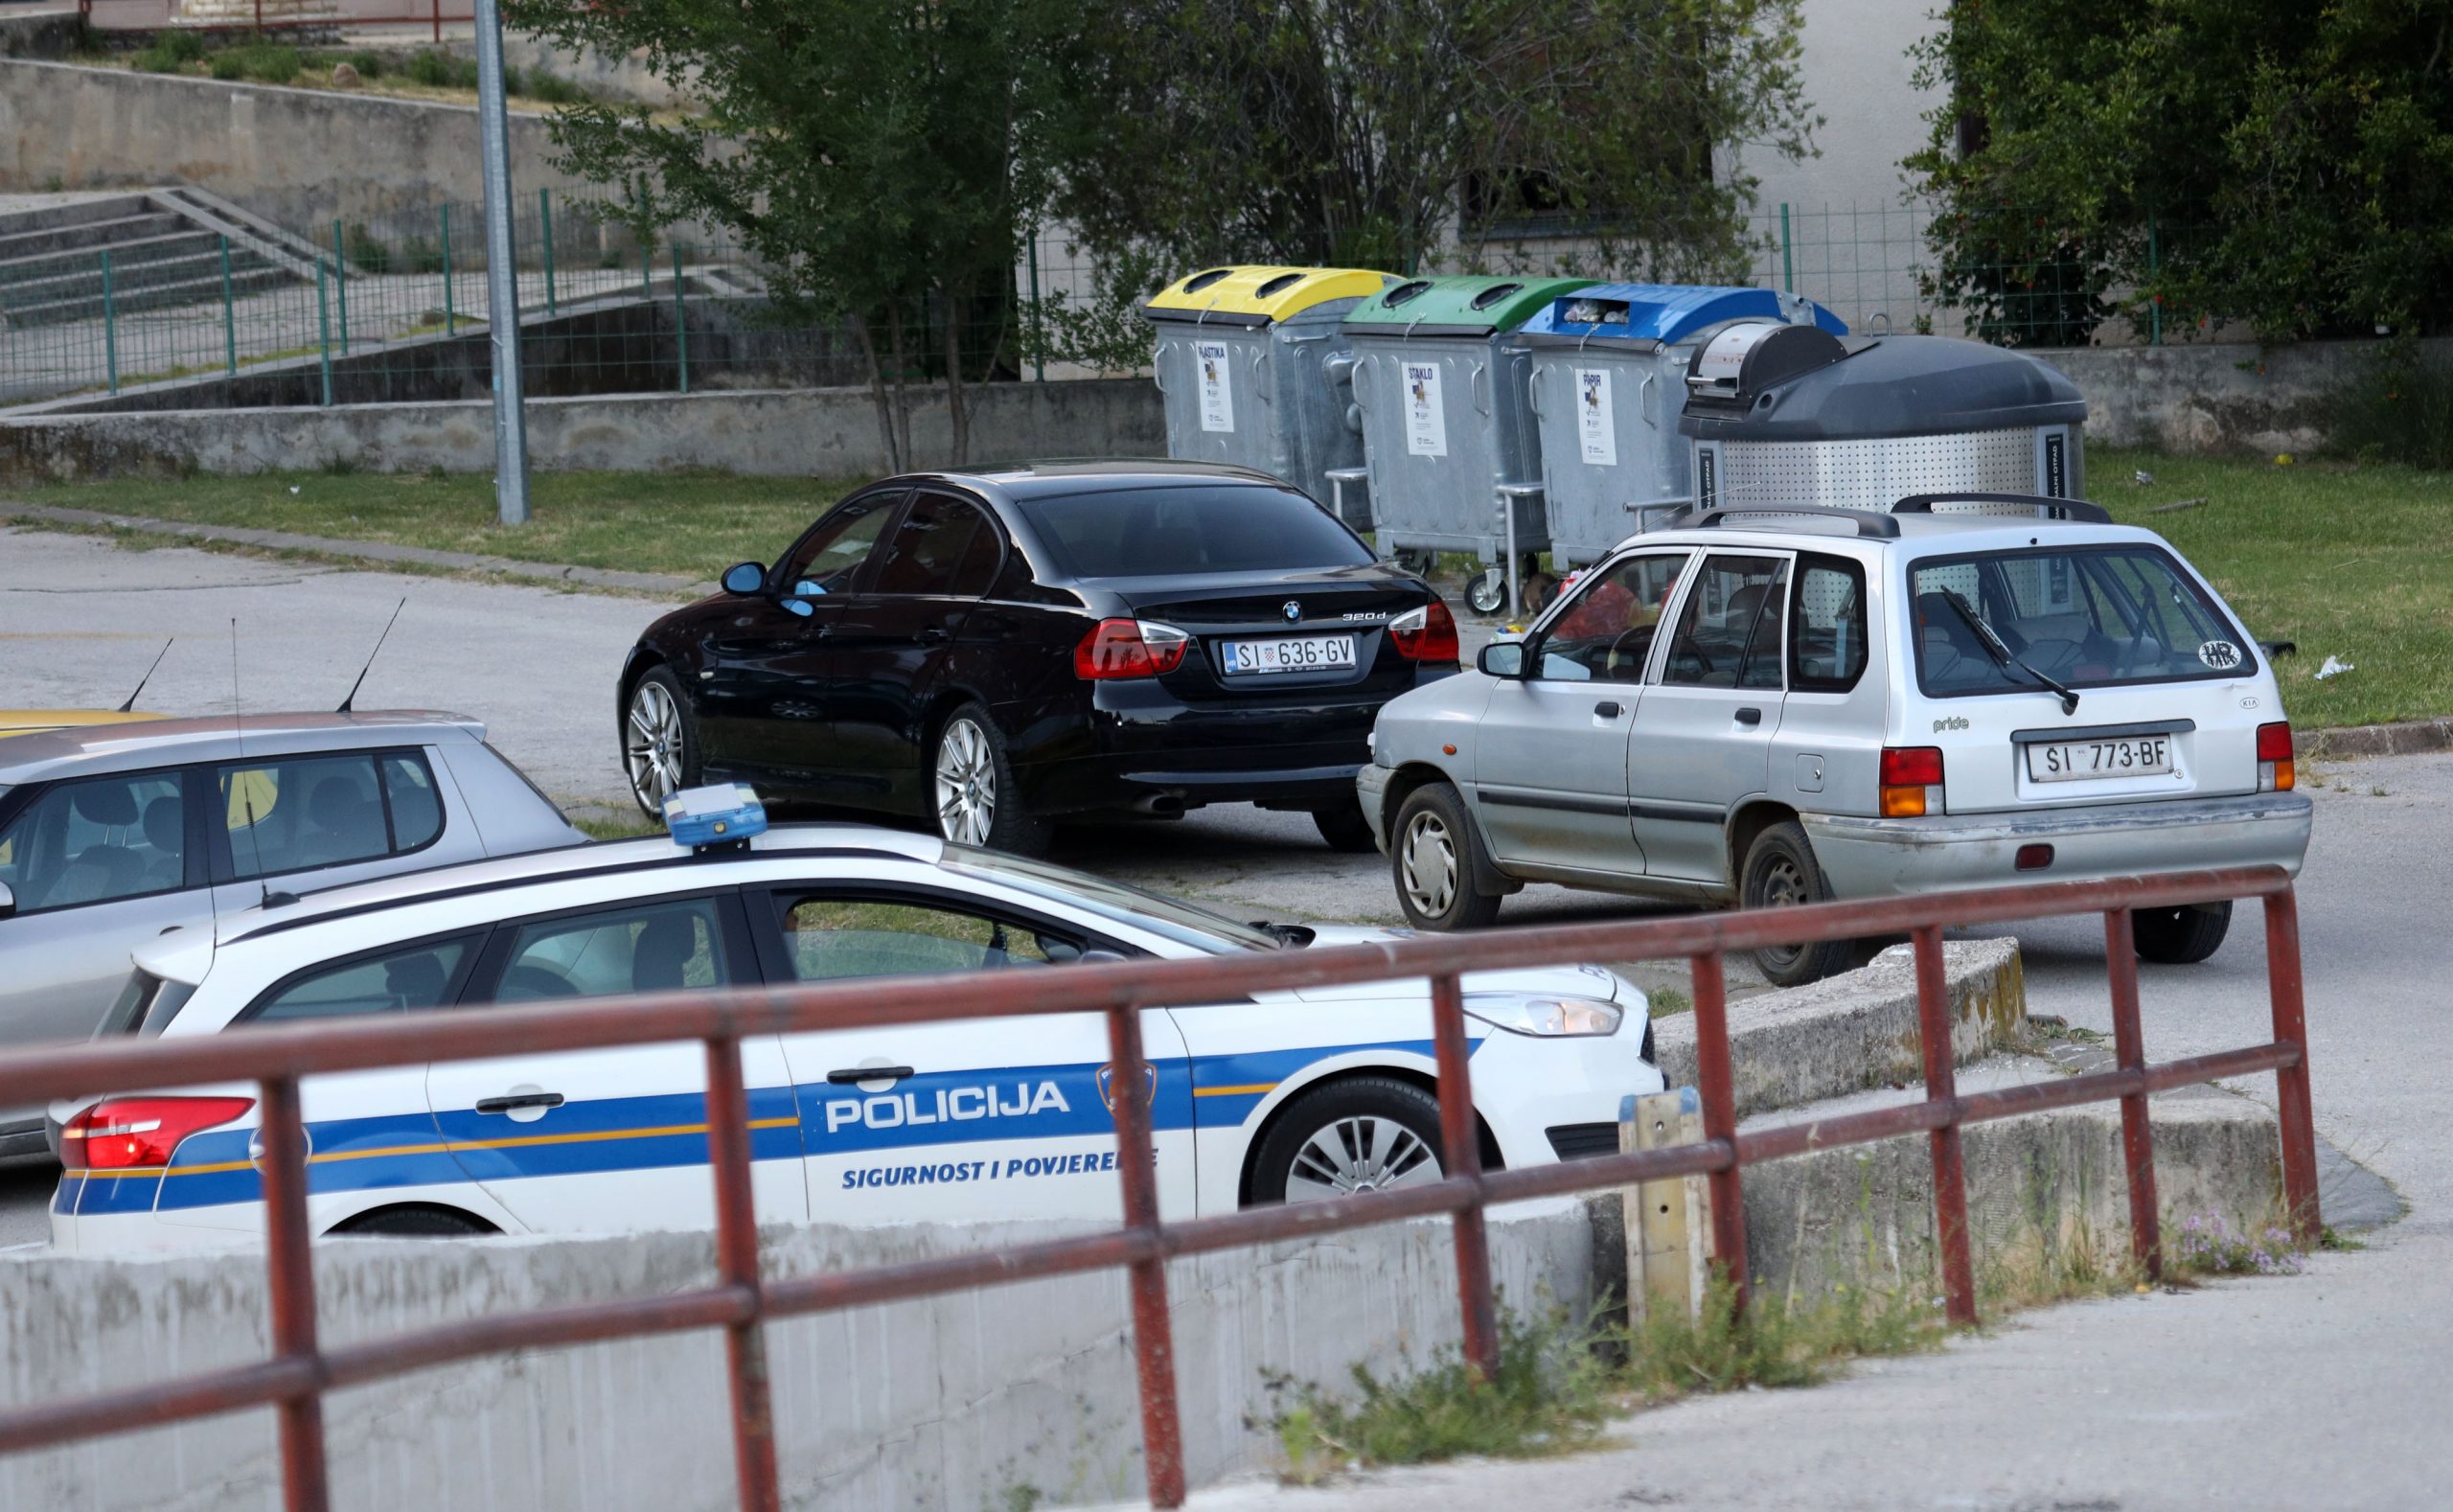 08.06.2021. Knin - Bezivotno tijelo djeteta pronadjeno je u  u parkiranom automobilu

Photo:Dusko Jaramaz/PIXSELLL